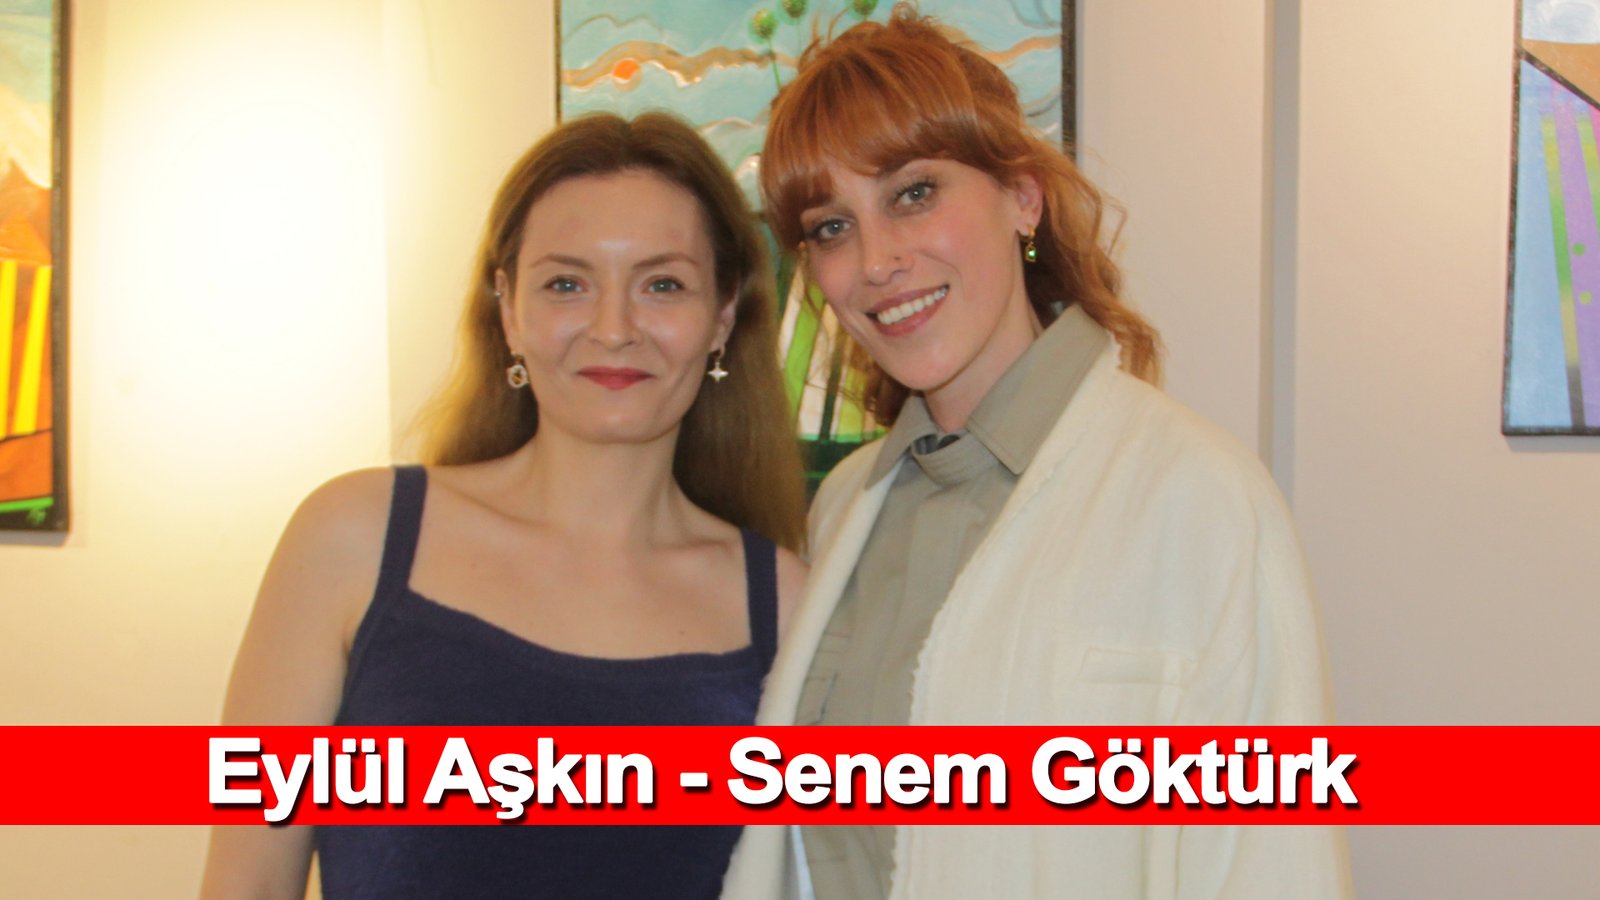 I Was Born 1 Kilo 300 Grams Senem Göktürk, With Eylül Aşkın Special Interview